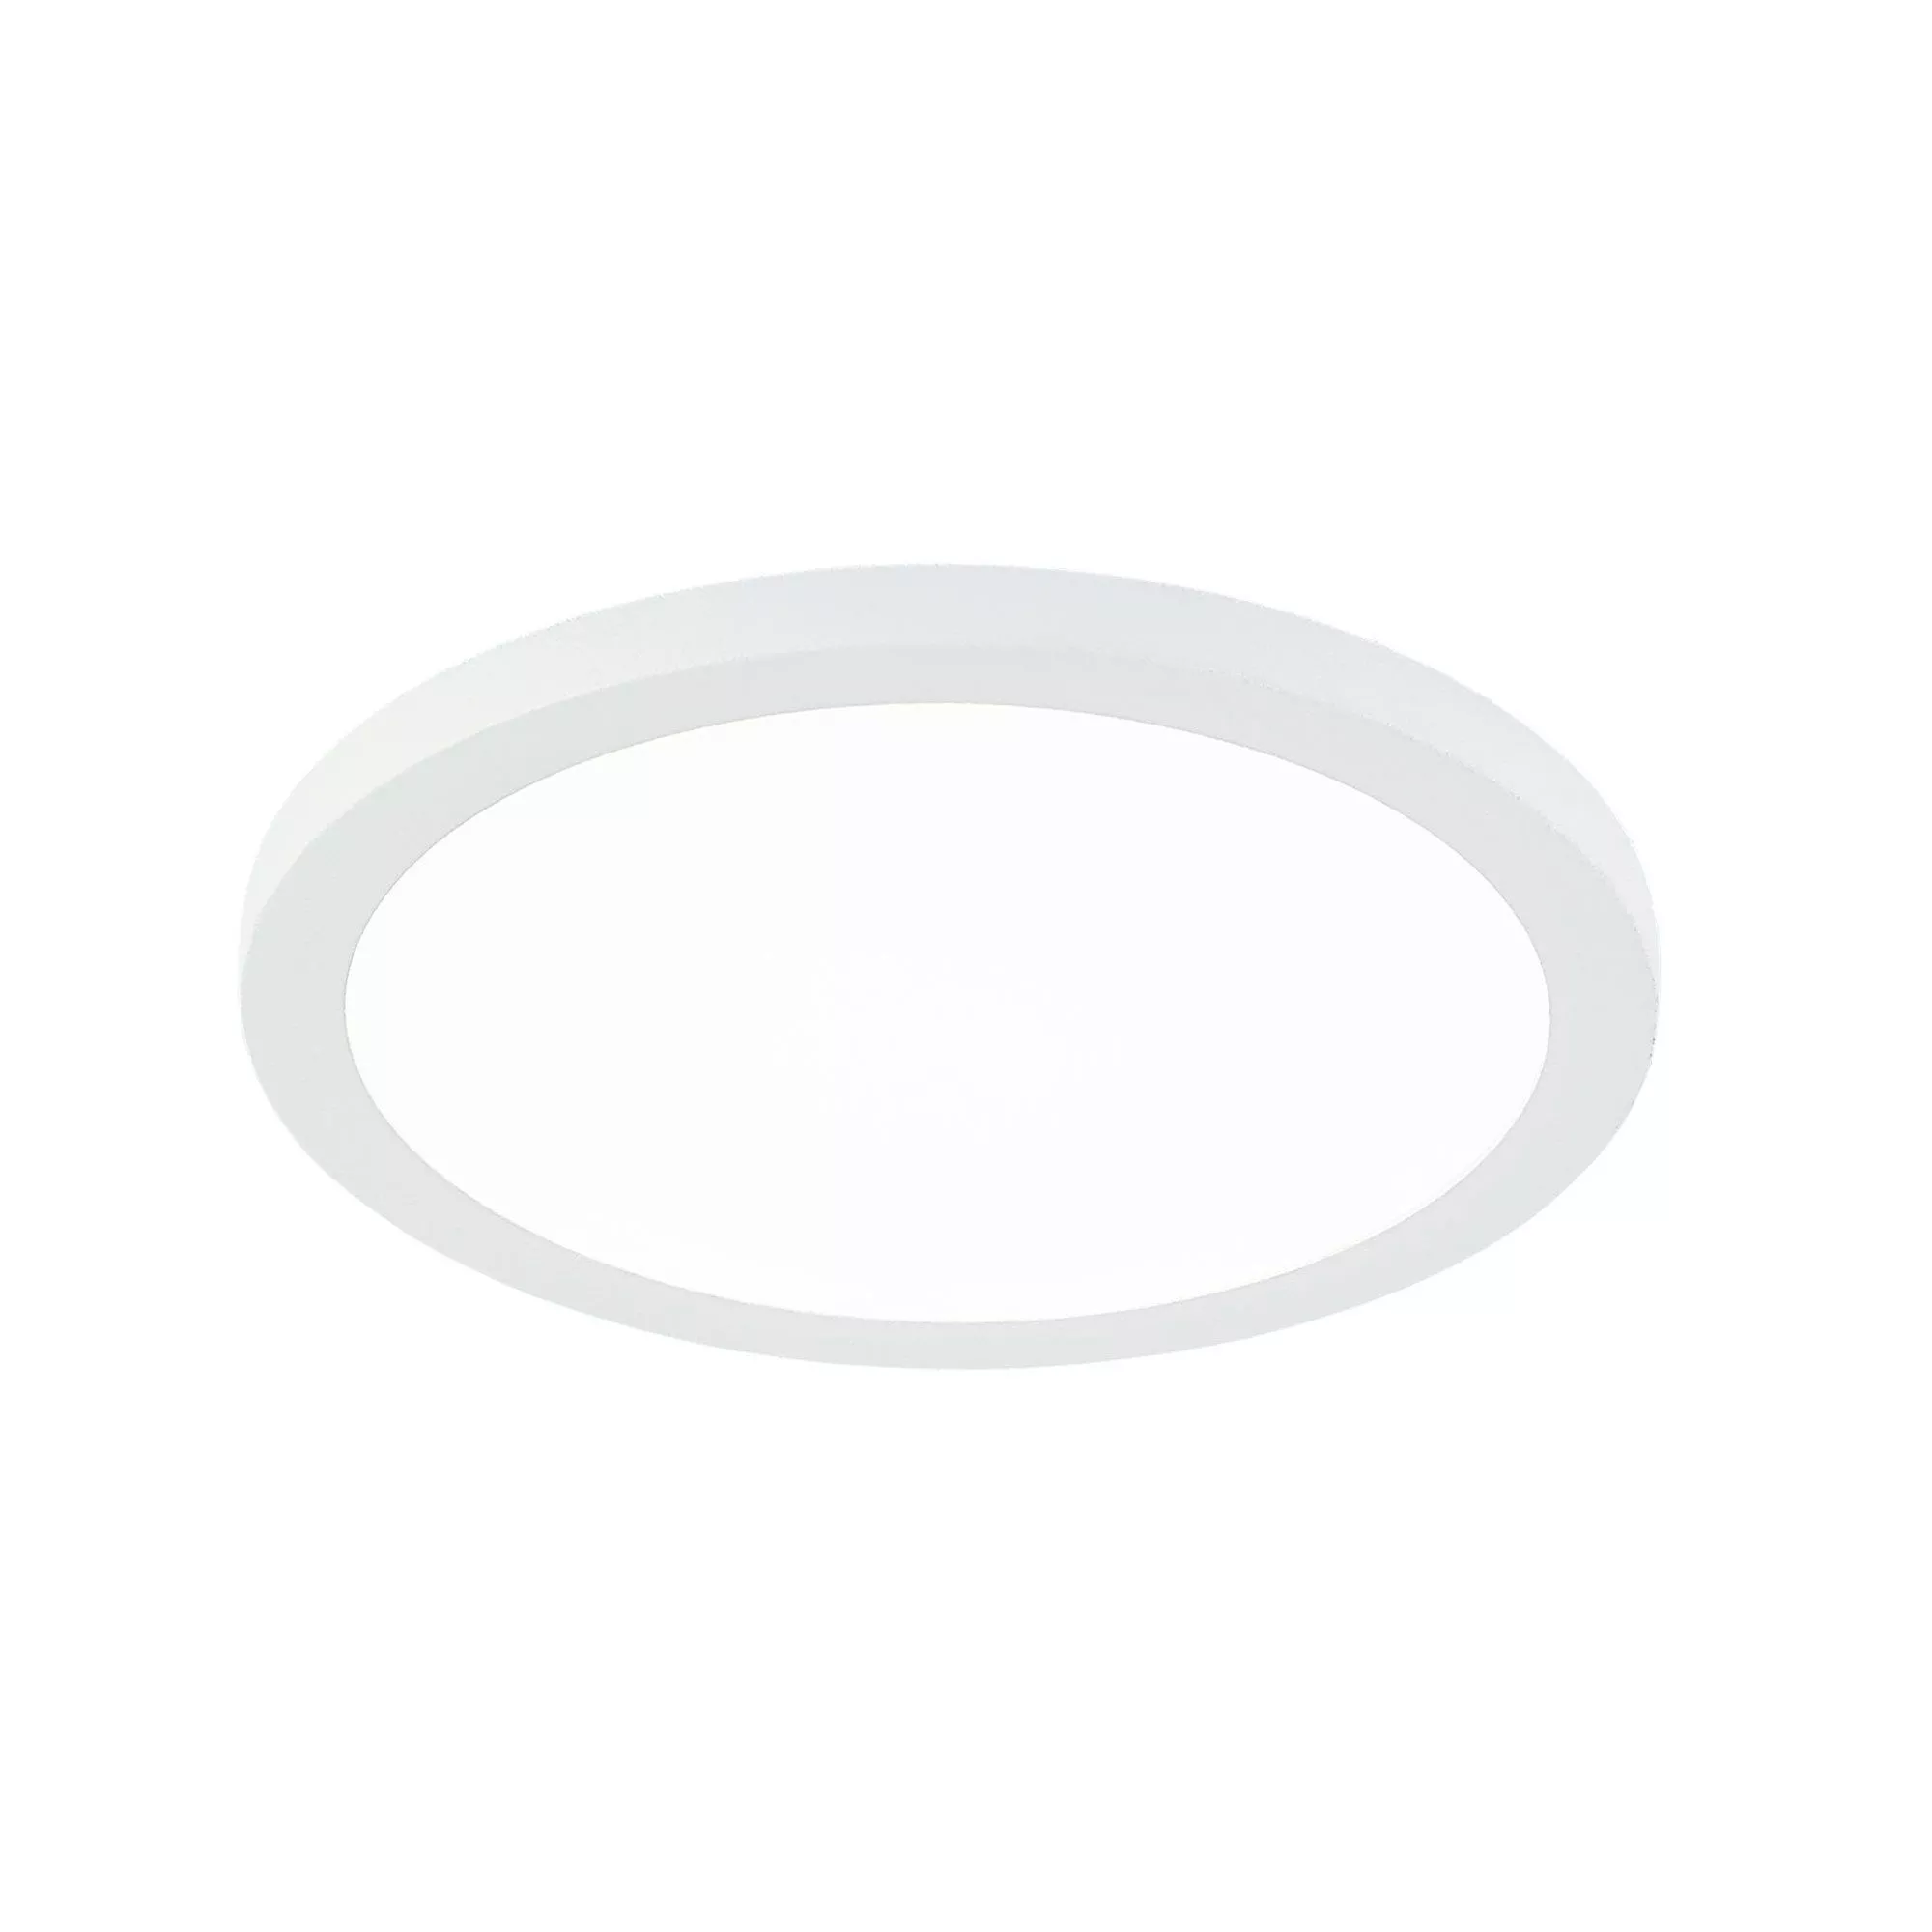 Встраиваемый светильник Омега D 90 белый (дневной свет) Citilux CLD50R080N